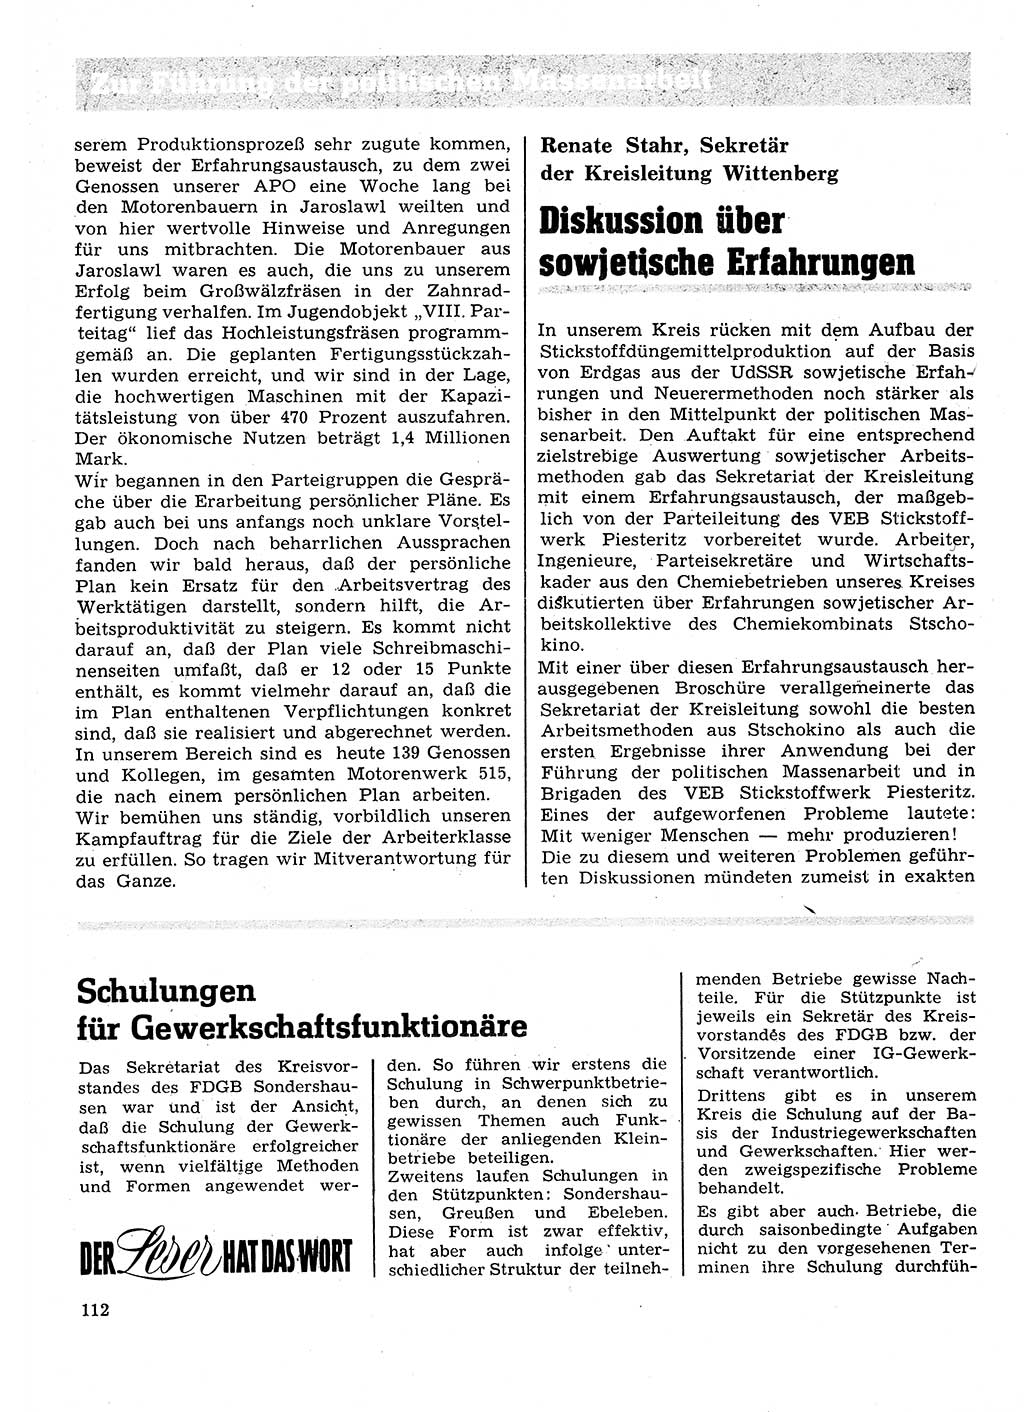 Neuer Weg (NW), Organ des Zentralkomitees (ZK) der SED (Sozialistische Einheitspartei Deutschlands) für Fragen des Parteilebens, 28. Jahrgang [Deutsche Demokratische Republik (DDR)] 1973, Seite 112 (NW ZK SED DDR 1973, S. 112)